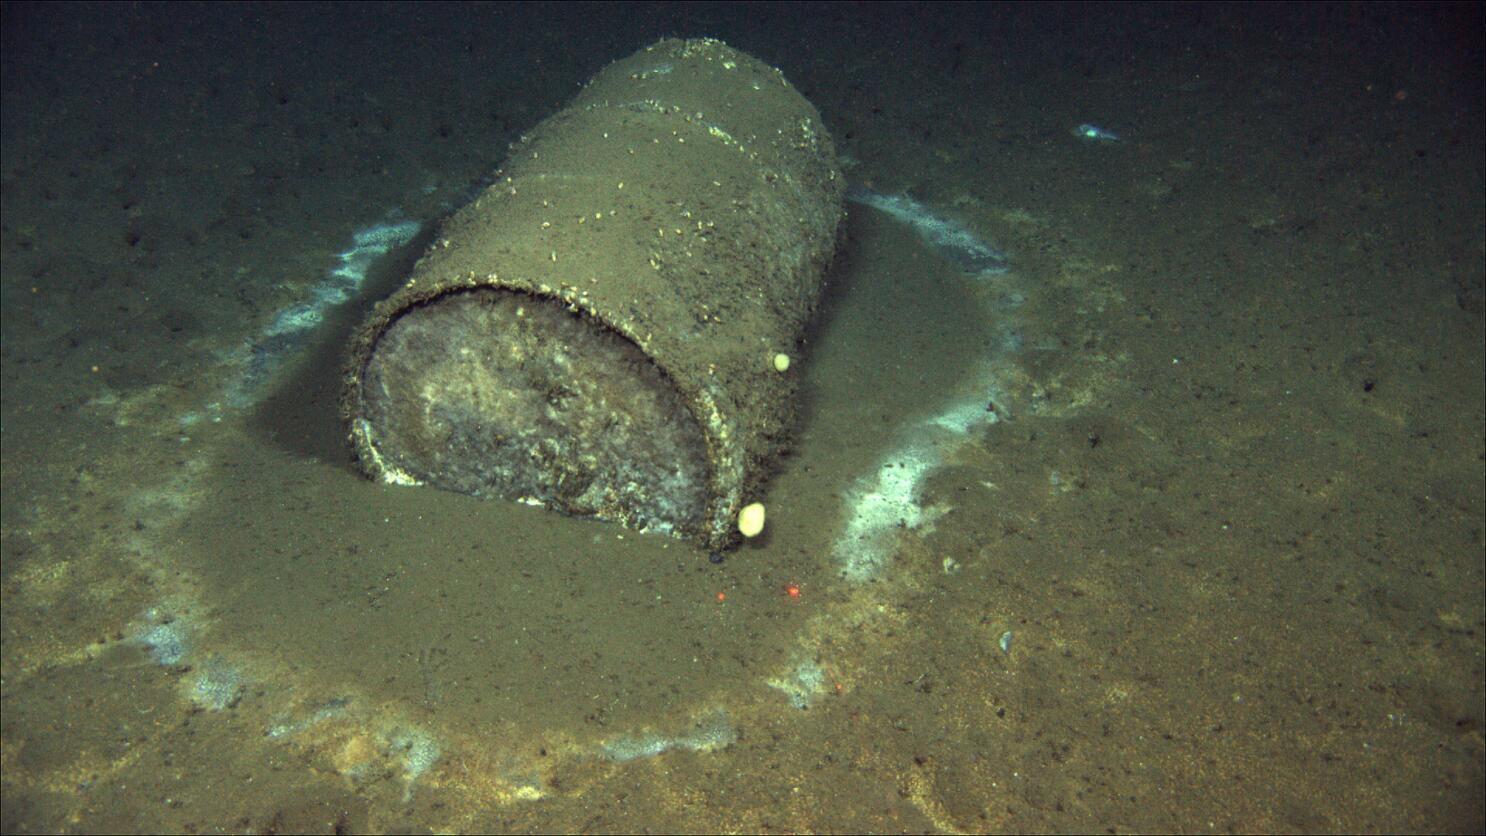 Los científicos calculan que podría haber hasta medio millón de barriles como este en el lecho marino frente a las costas del sur de California.

David Valentine / ROV Jason